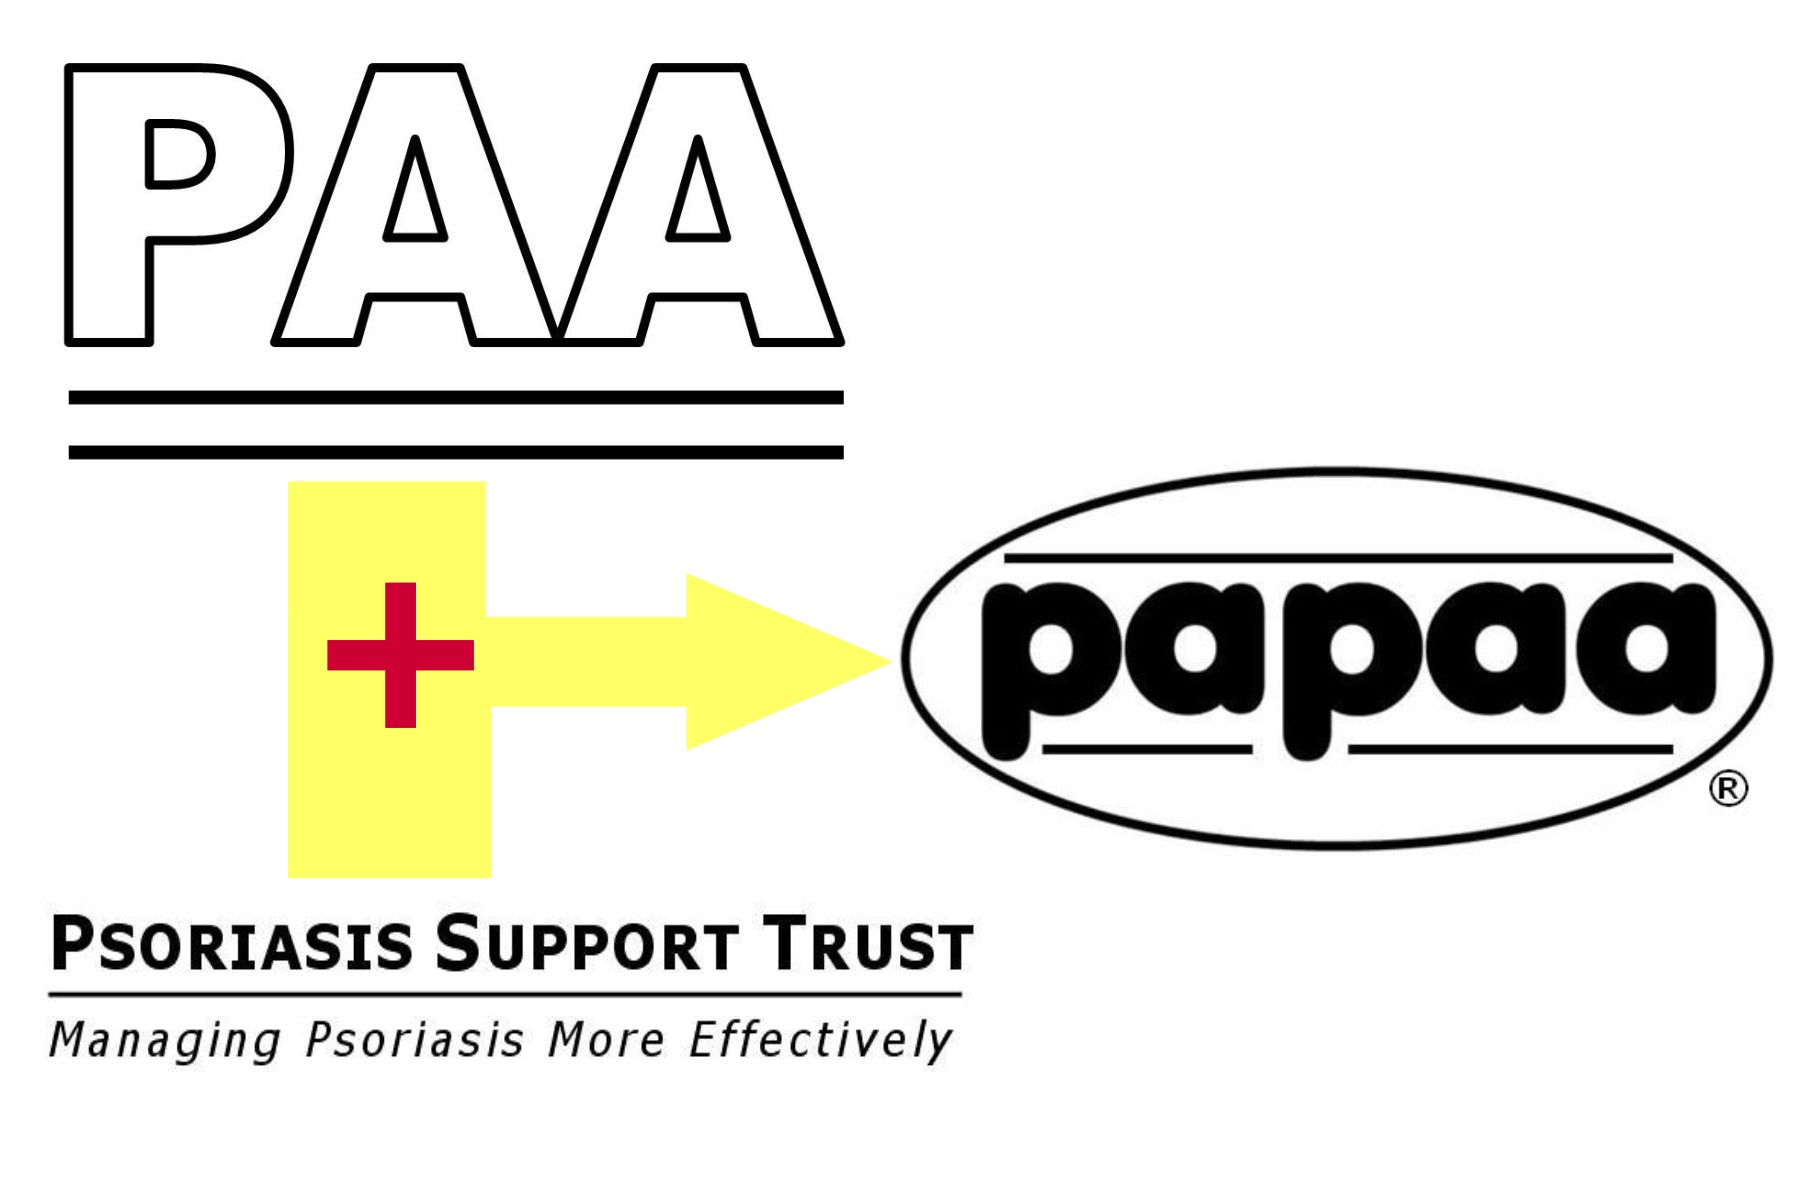 PAA & PST merged into PAPAA